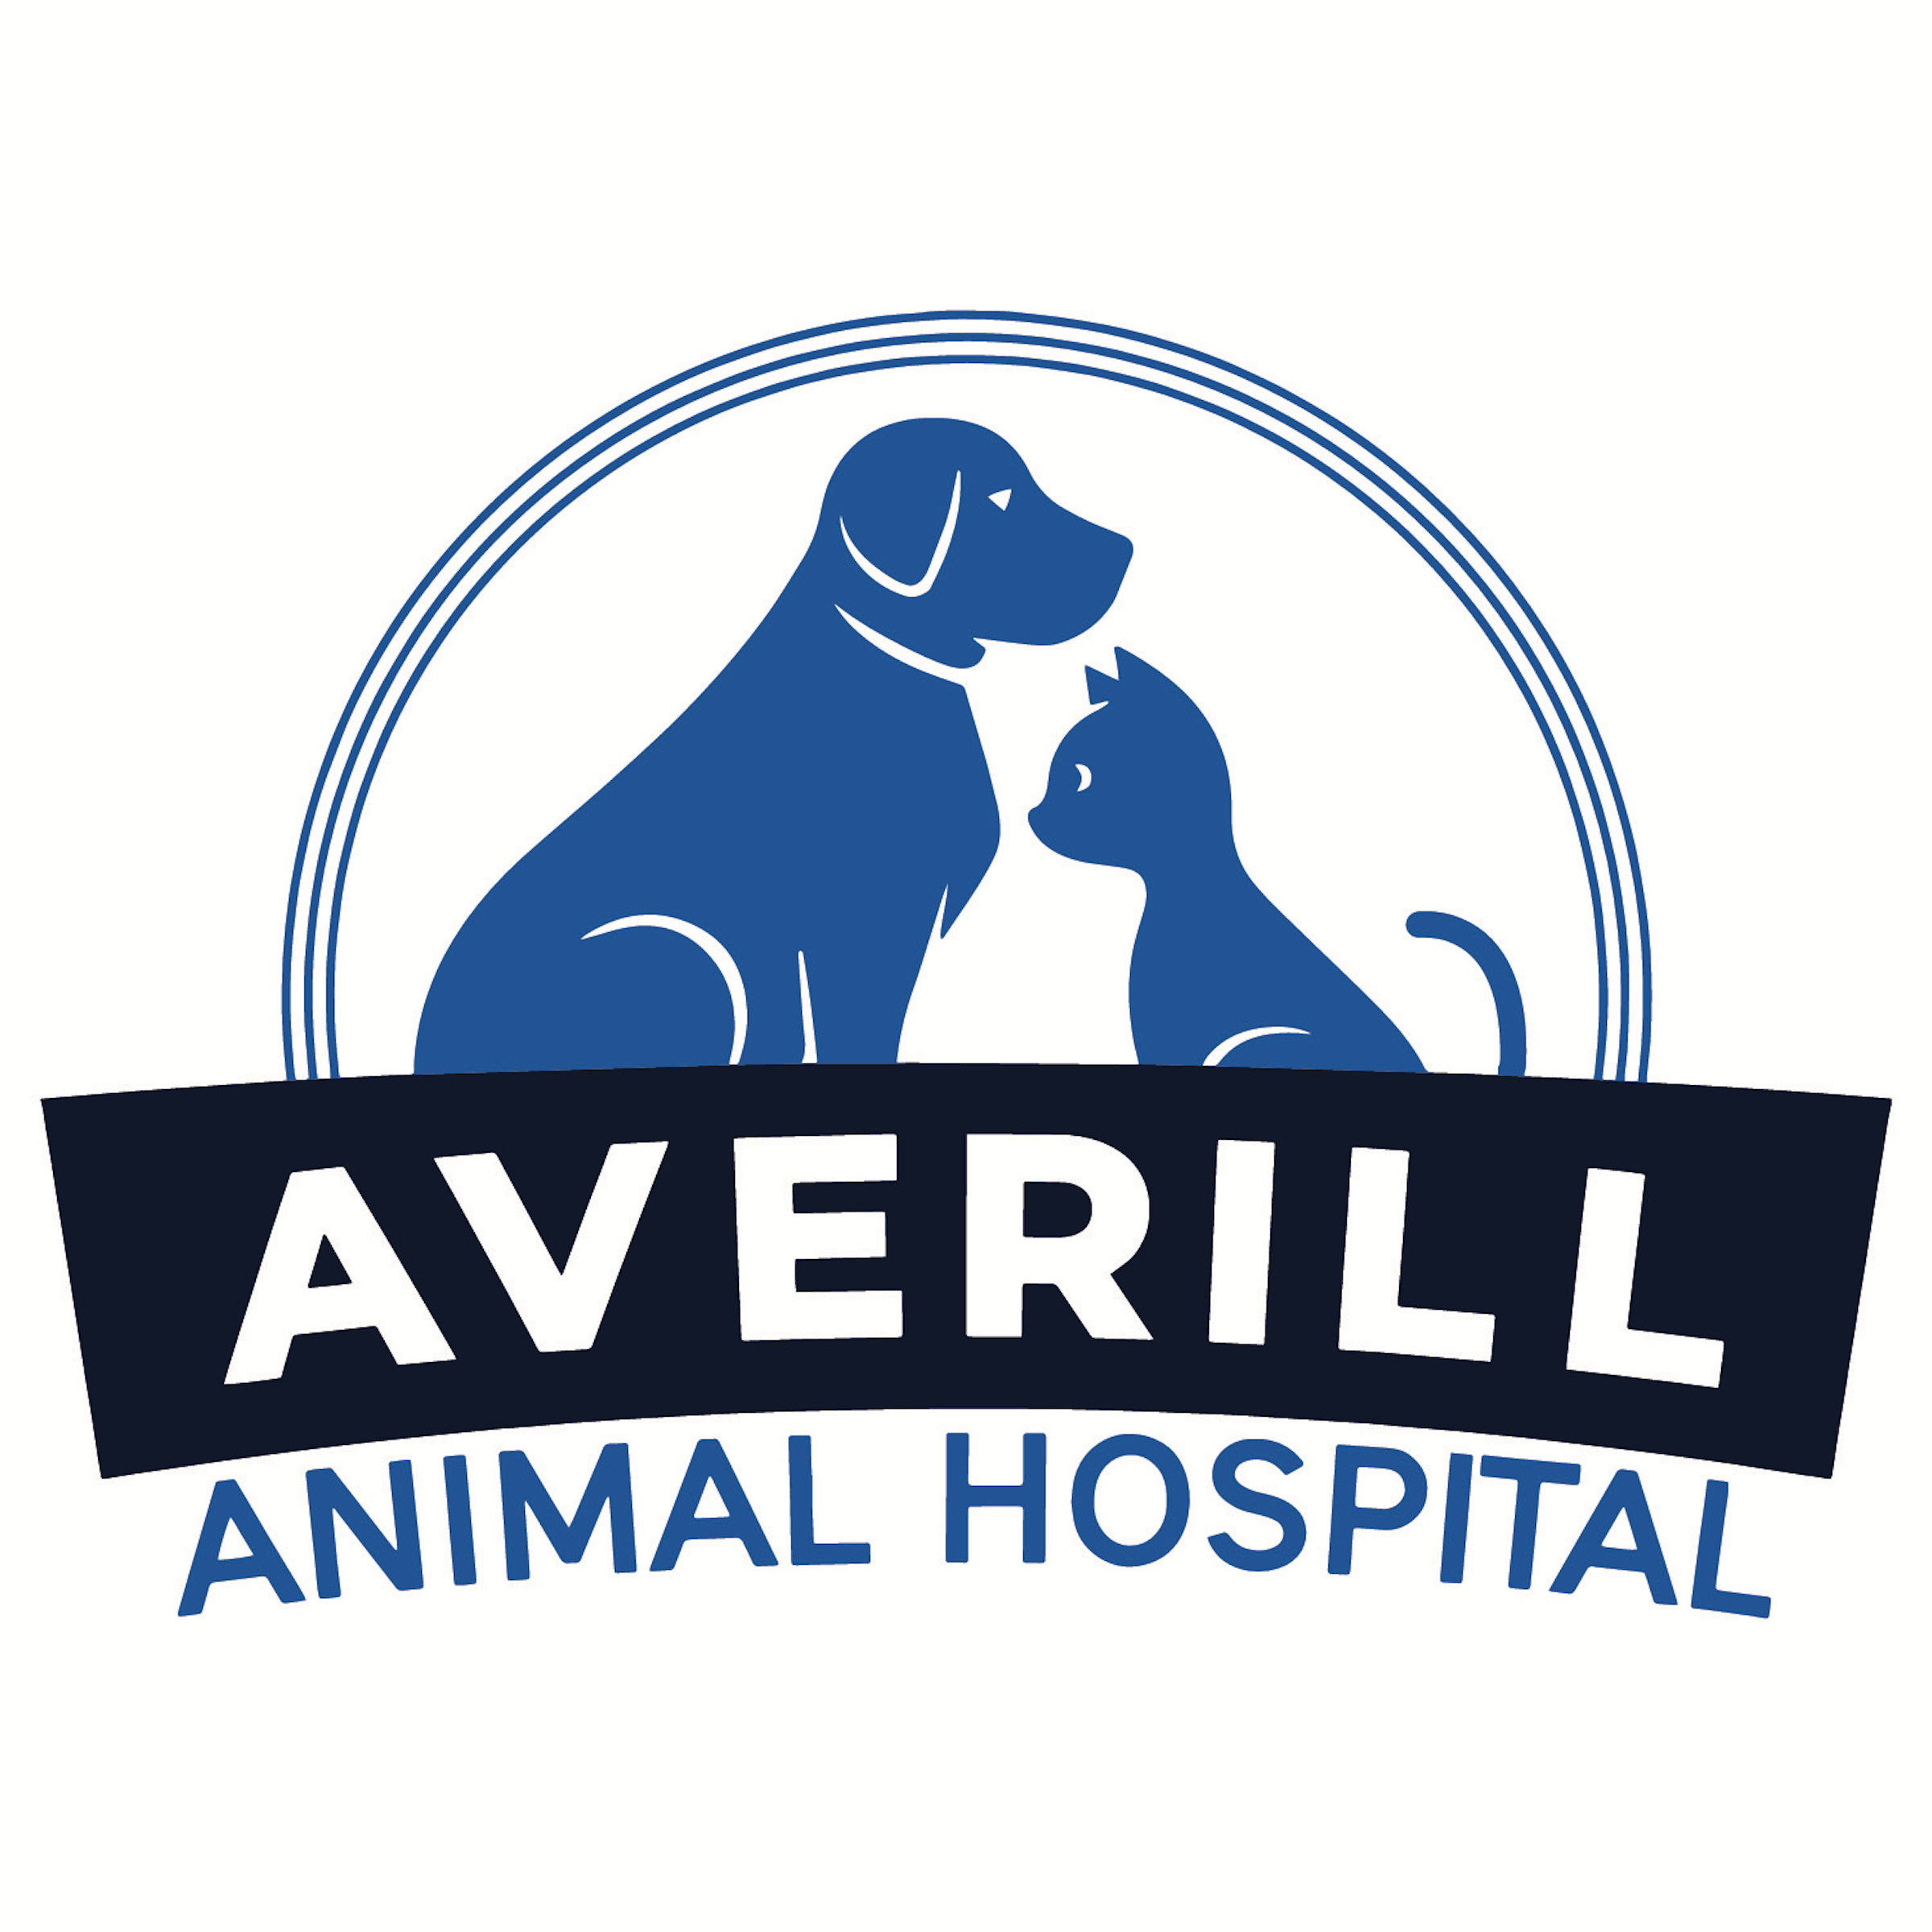 Averill Animal Hospital